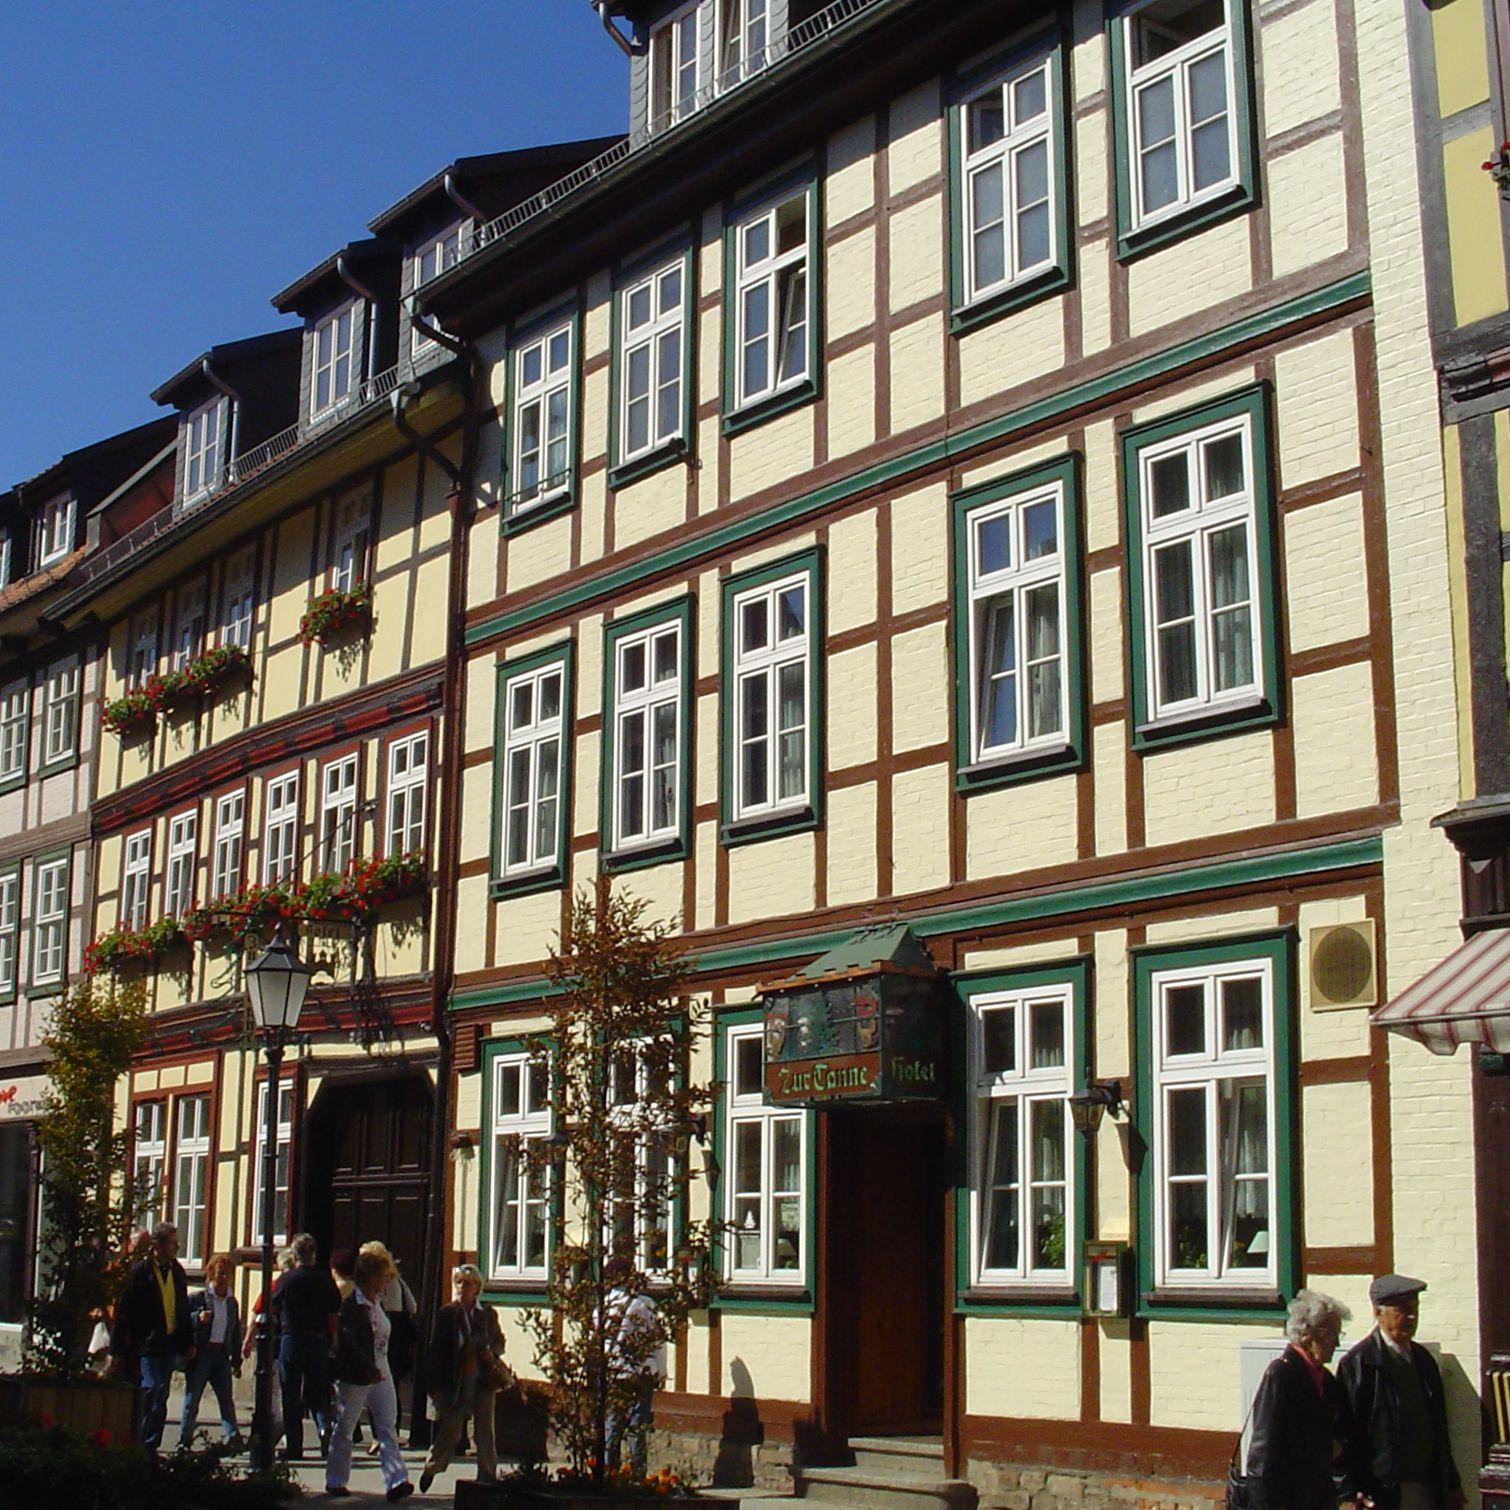 Restaurant "Hotel Zur Tanne" in Wernigerode